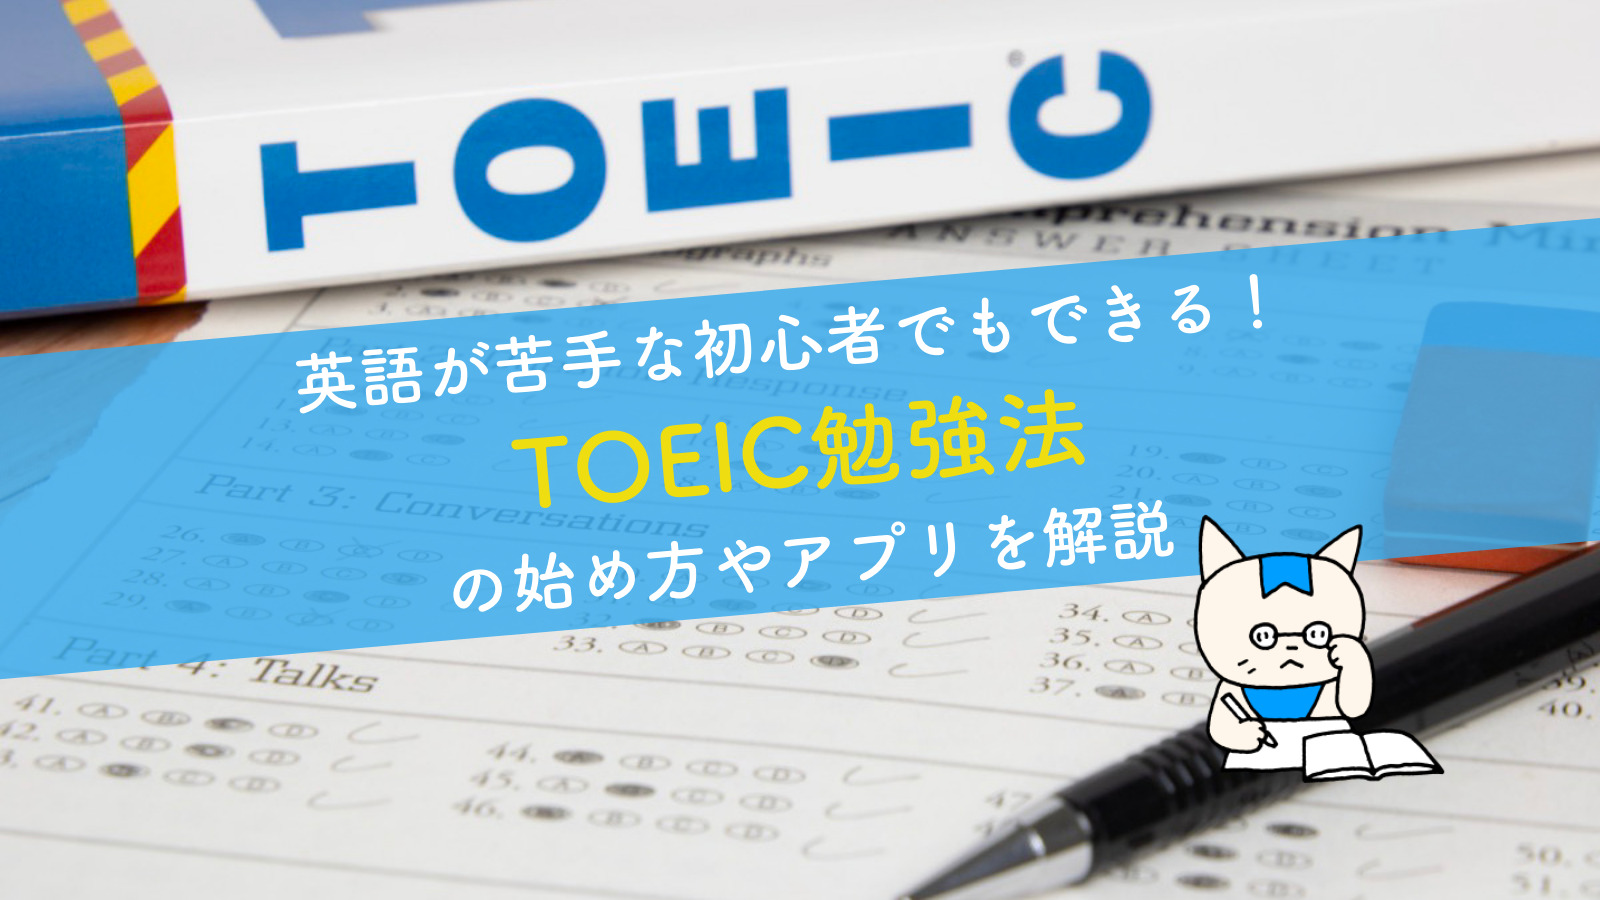 英語が苦手な初心者でもできる Toeic勉強法の始め方やアプリを解説